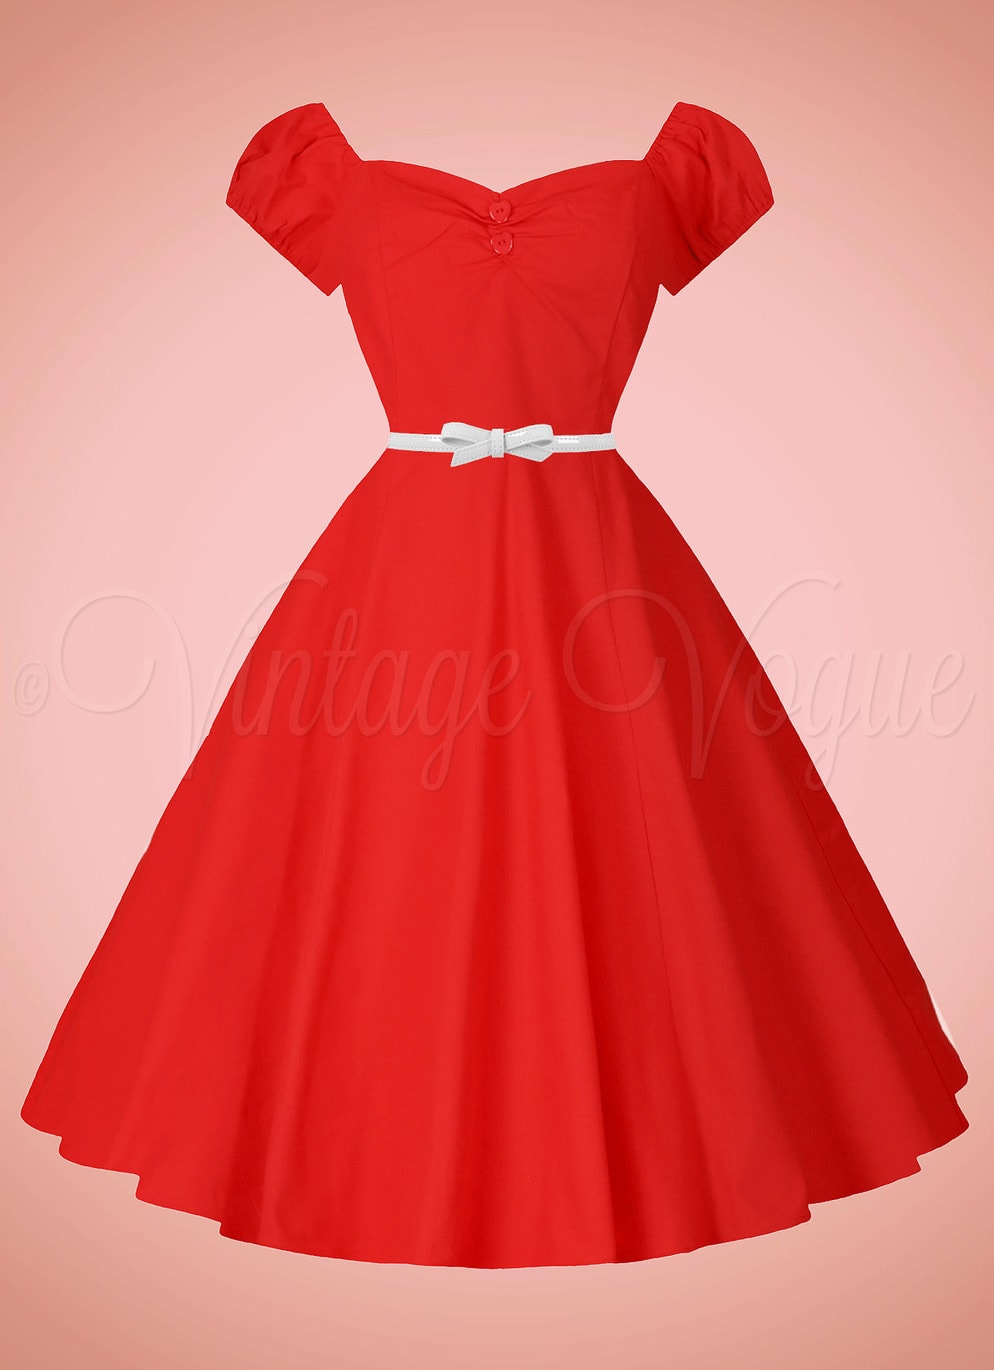 Banned Retro 50's Rockabilly Pin-Up Kleid Dance Swing Dress in Rot 50er Jahre Petticoat Damenkleid Swing Jive Lindy Hop Rock n Roll